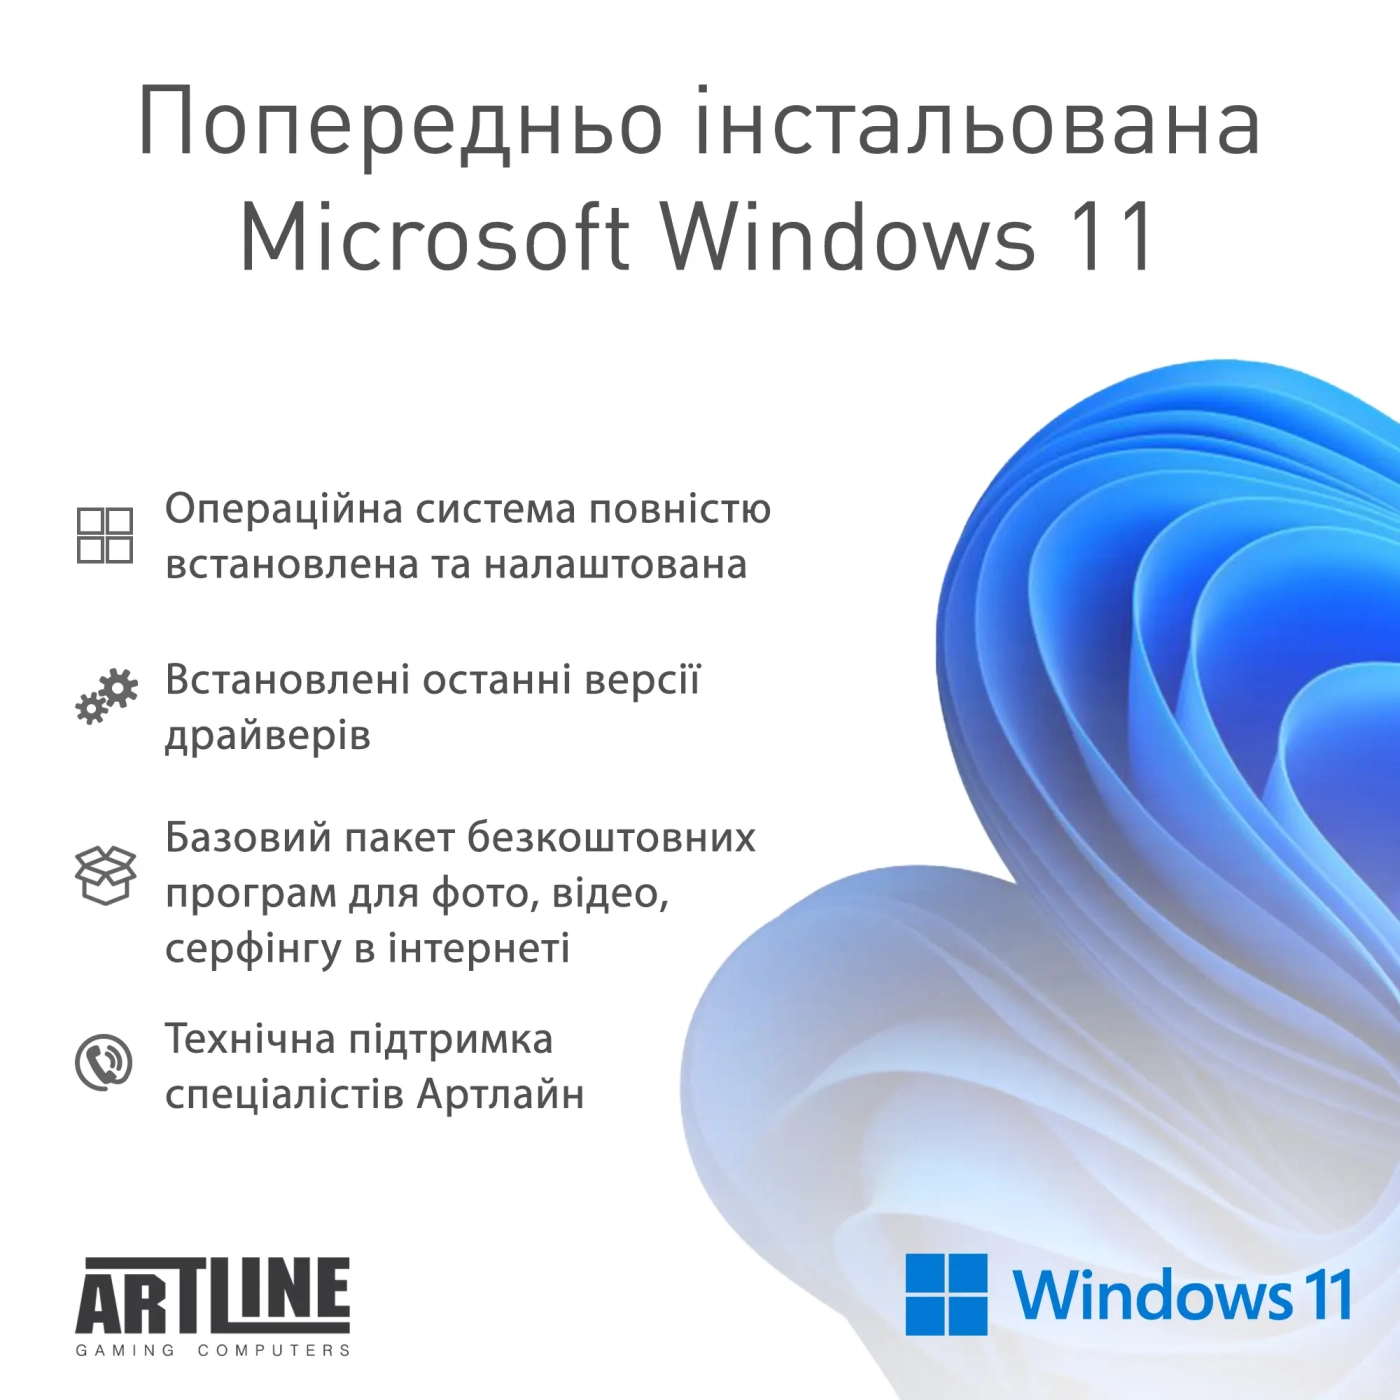 Купить Компьютер ARTLINE Gaming D31 Windows 11 Home (D31v56Win) - фото 11